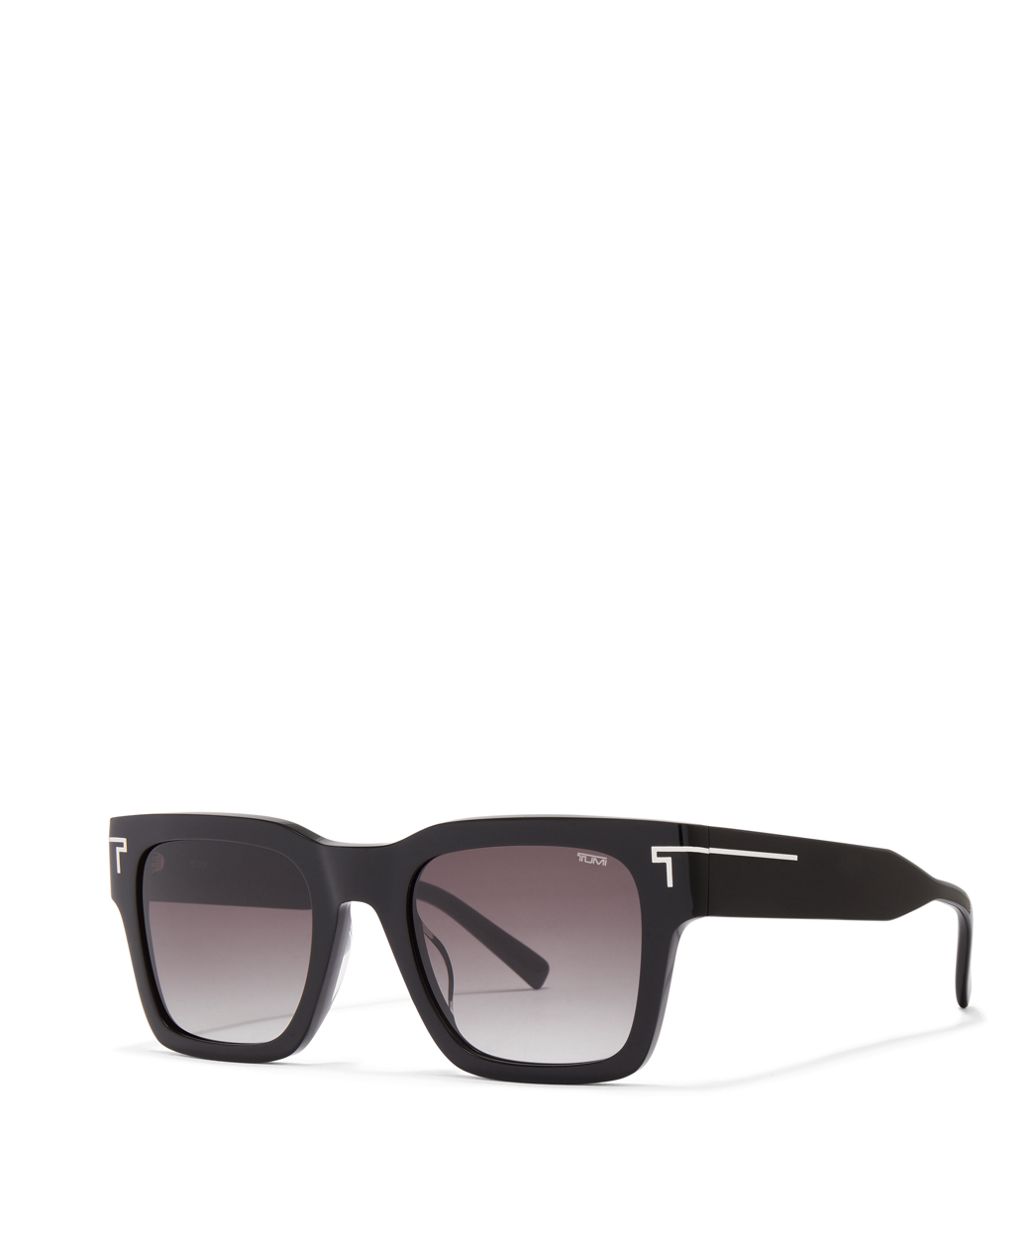 TUMI 508 Square Gradient Sunglasses, 52mm